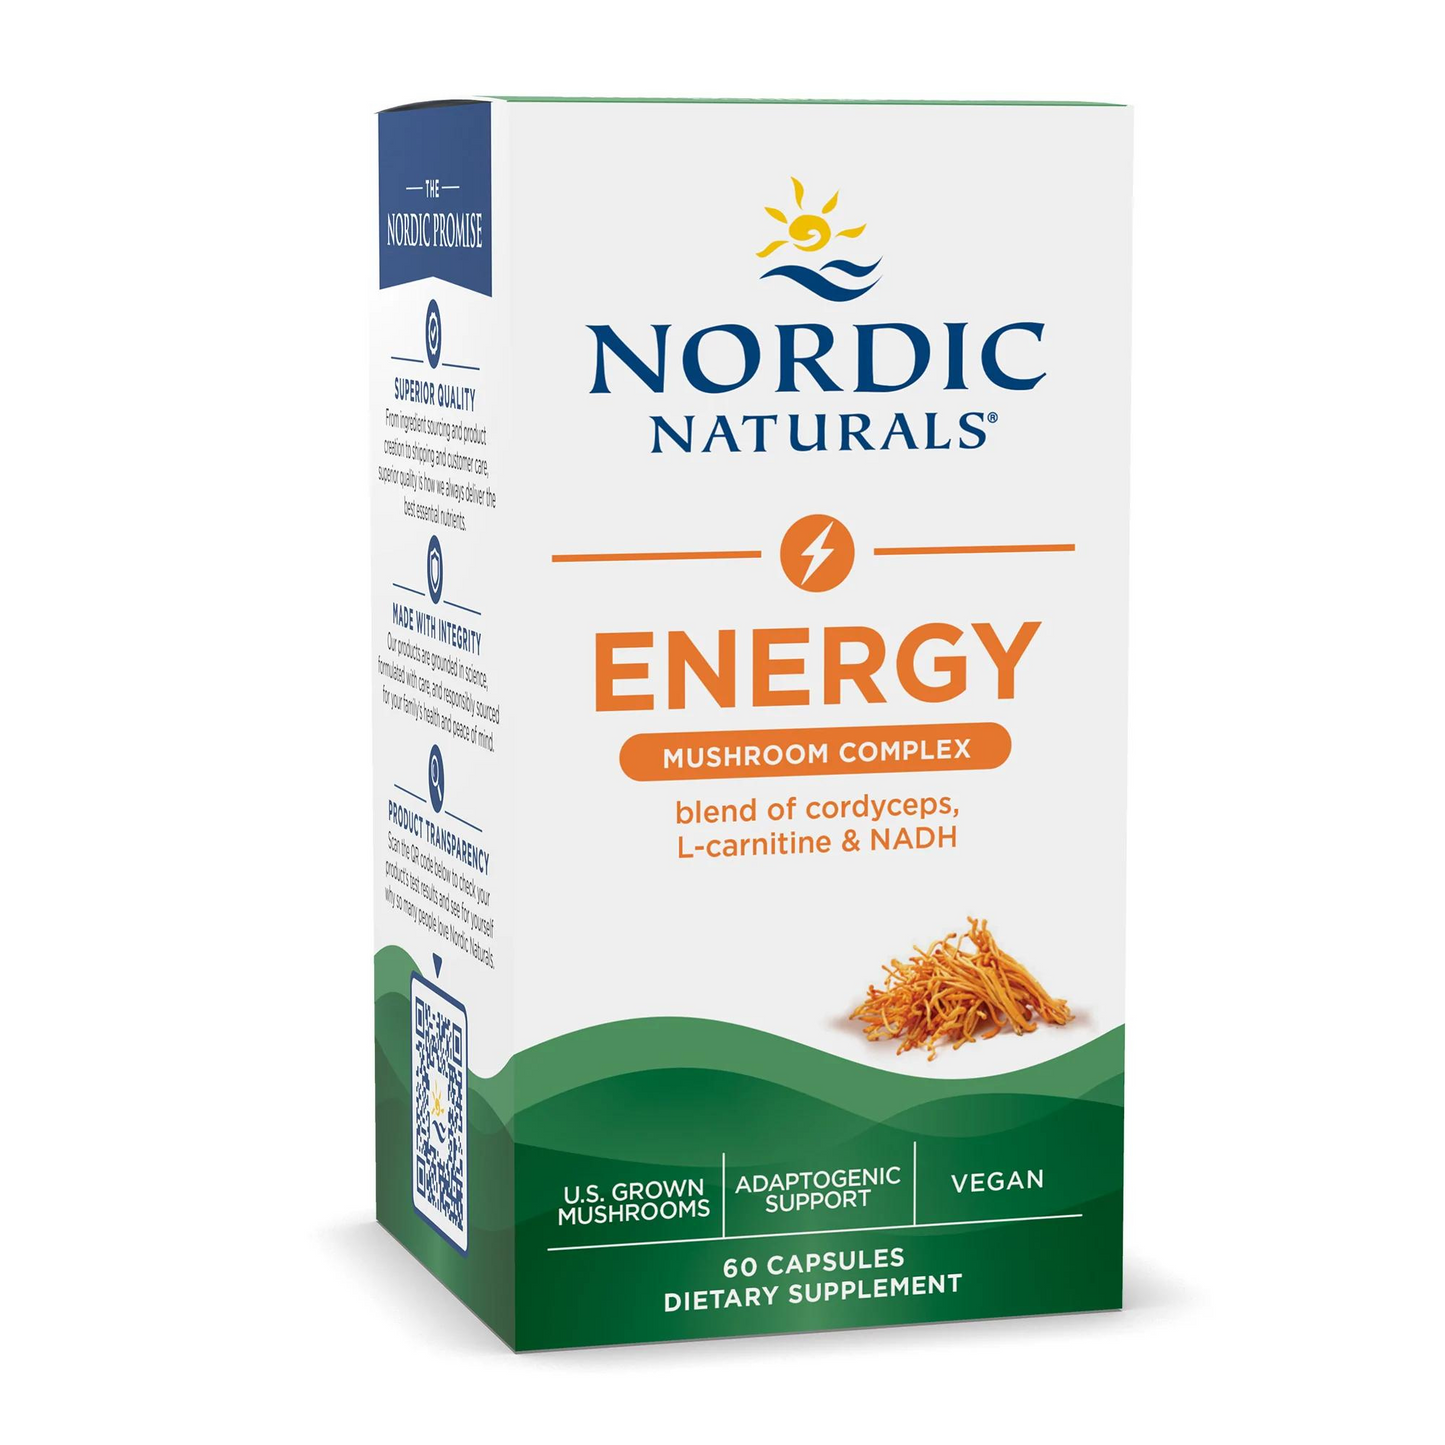 Primary Image of Nordic Naturals Energy Mushroom Complex Capsules (60 count)